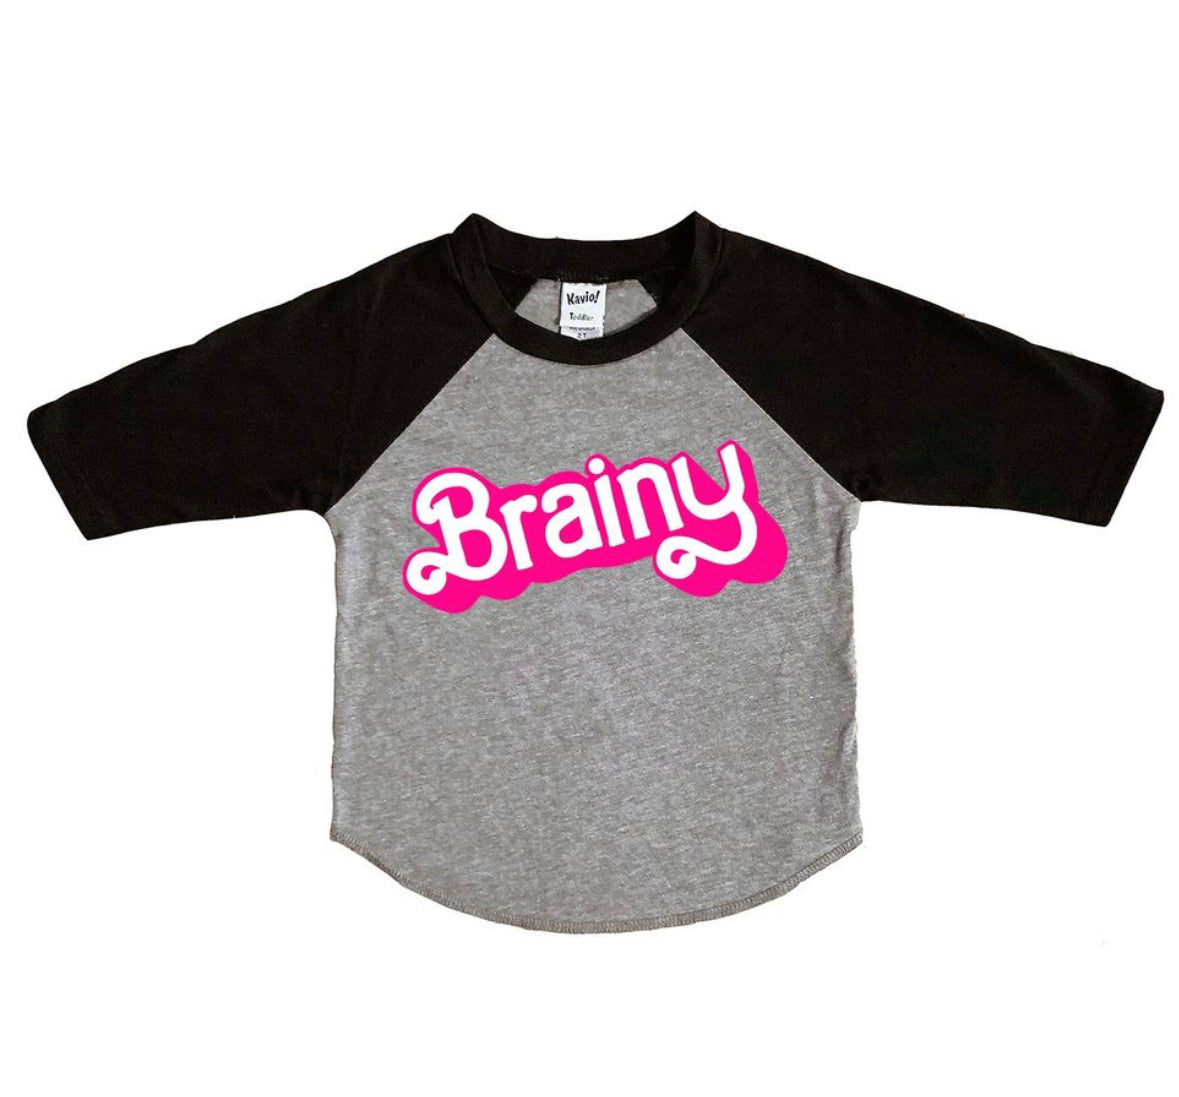 Brainy (Youth)